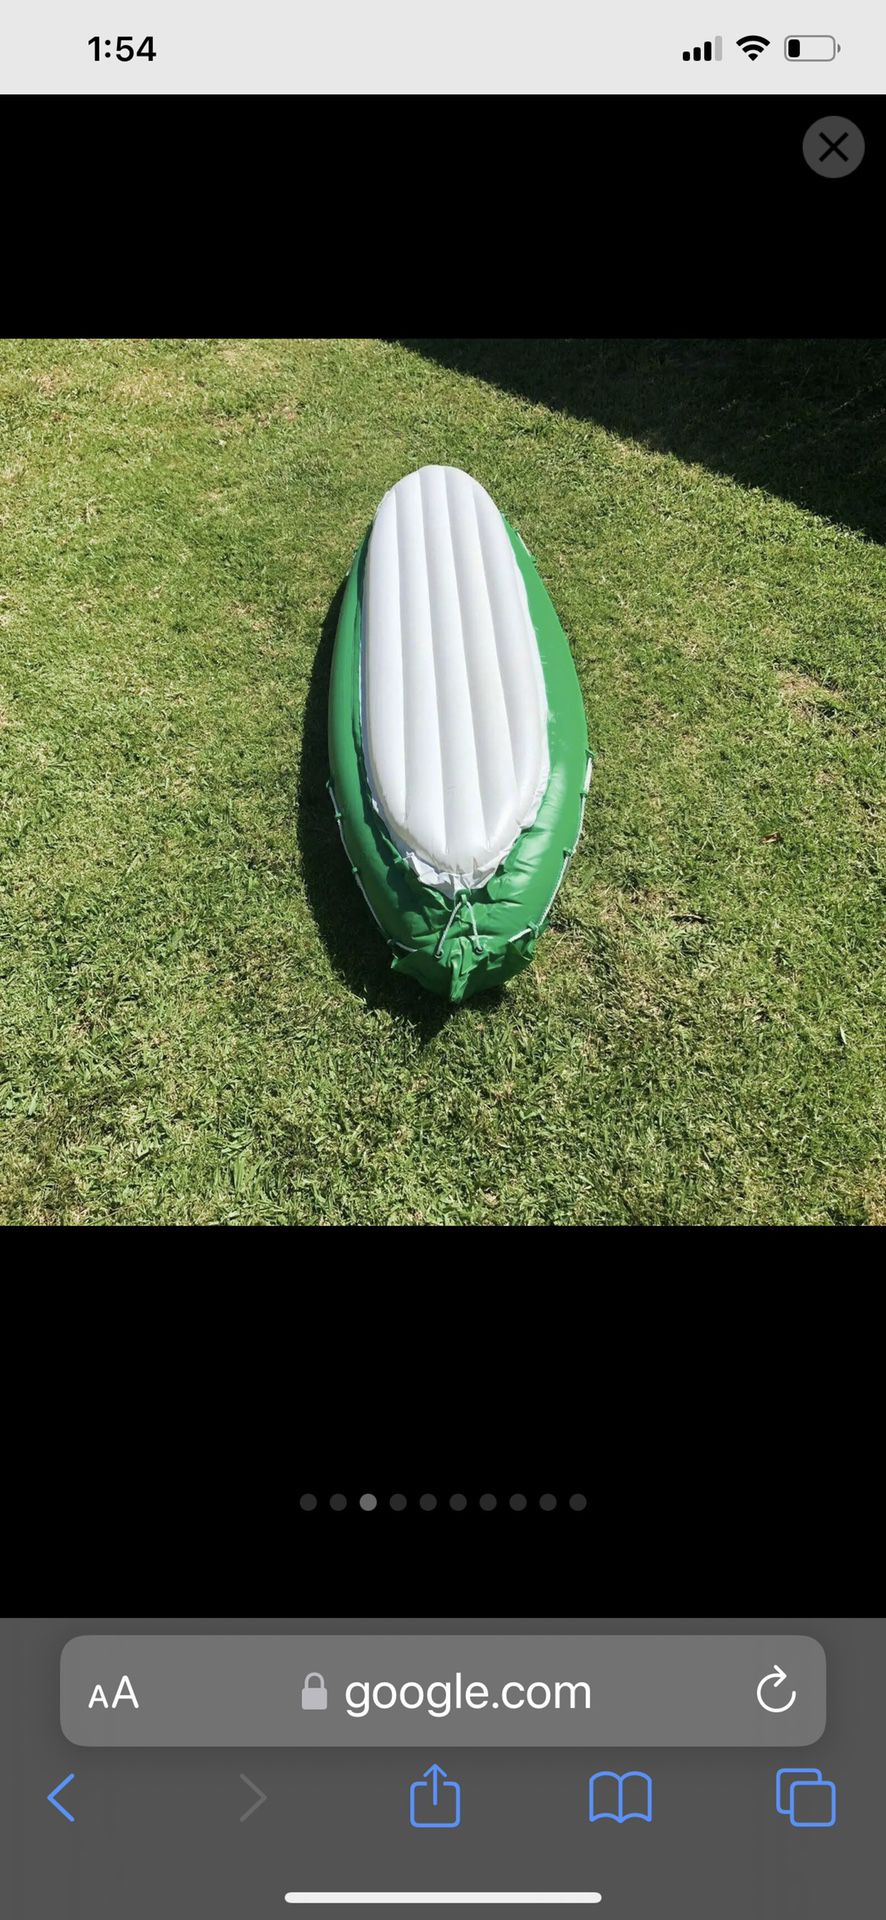  Inflatable Kayak Canoe 🛶 